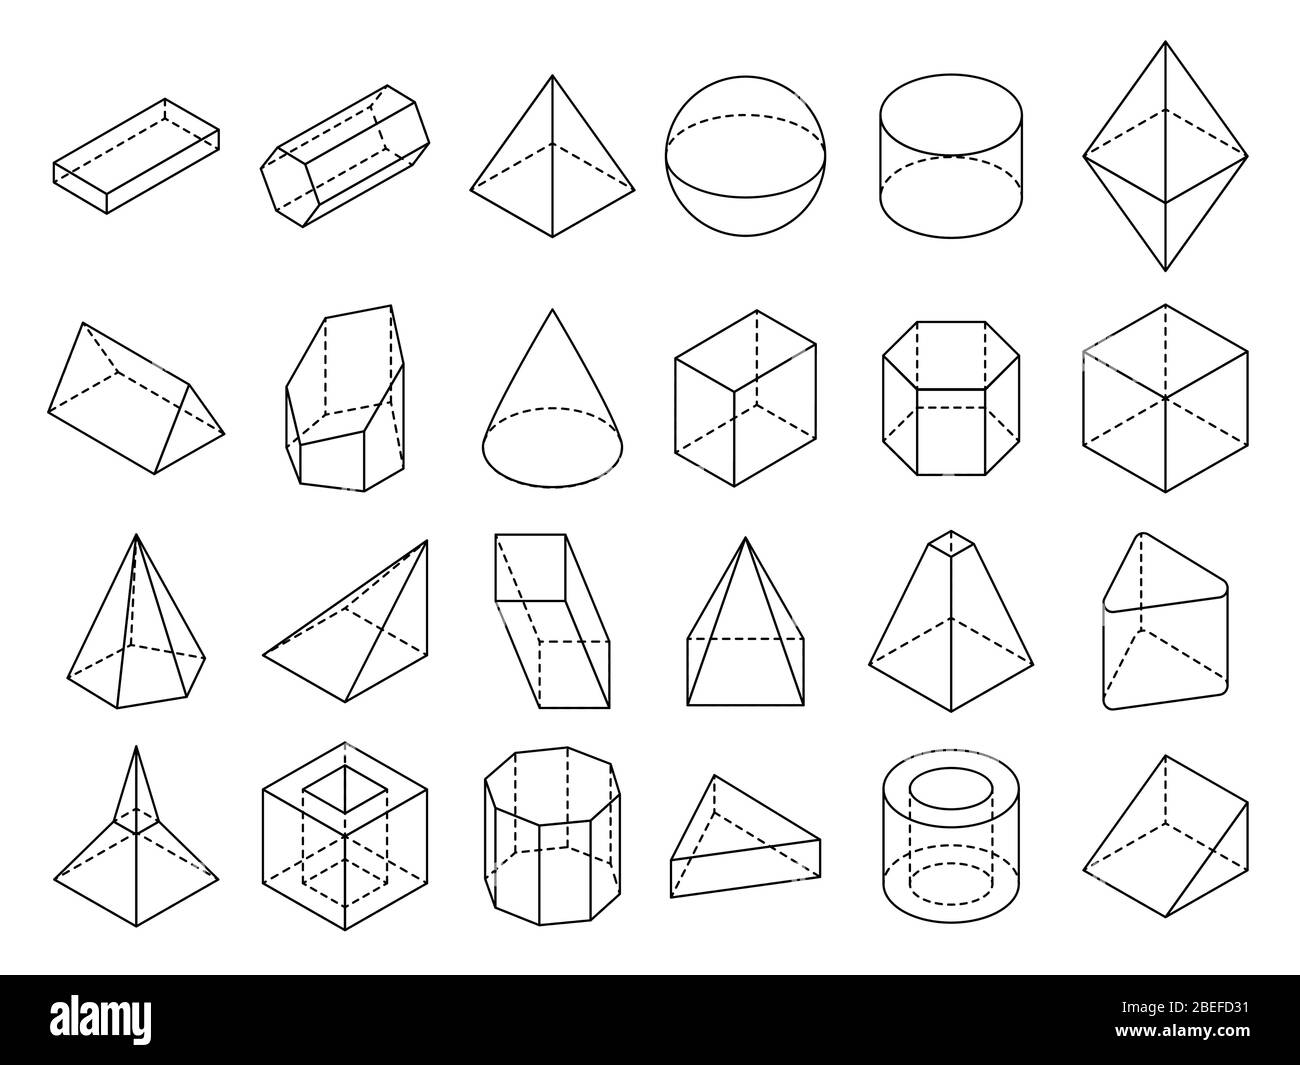 Abstrakt isometrische 3d geometrische Umrissformen Vektorset. 3d isometrische geometrische Form Würfel und Kugel Illustration Stock Vektor